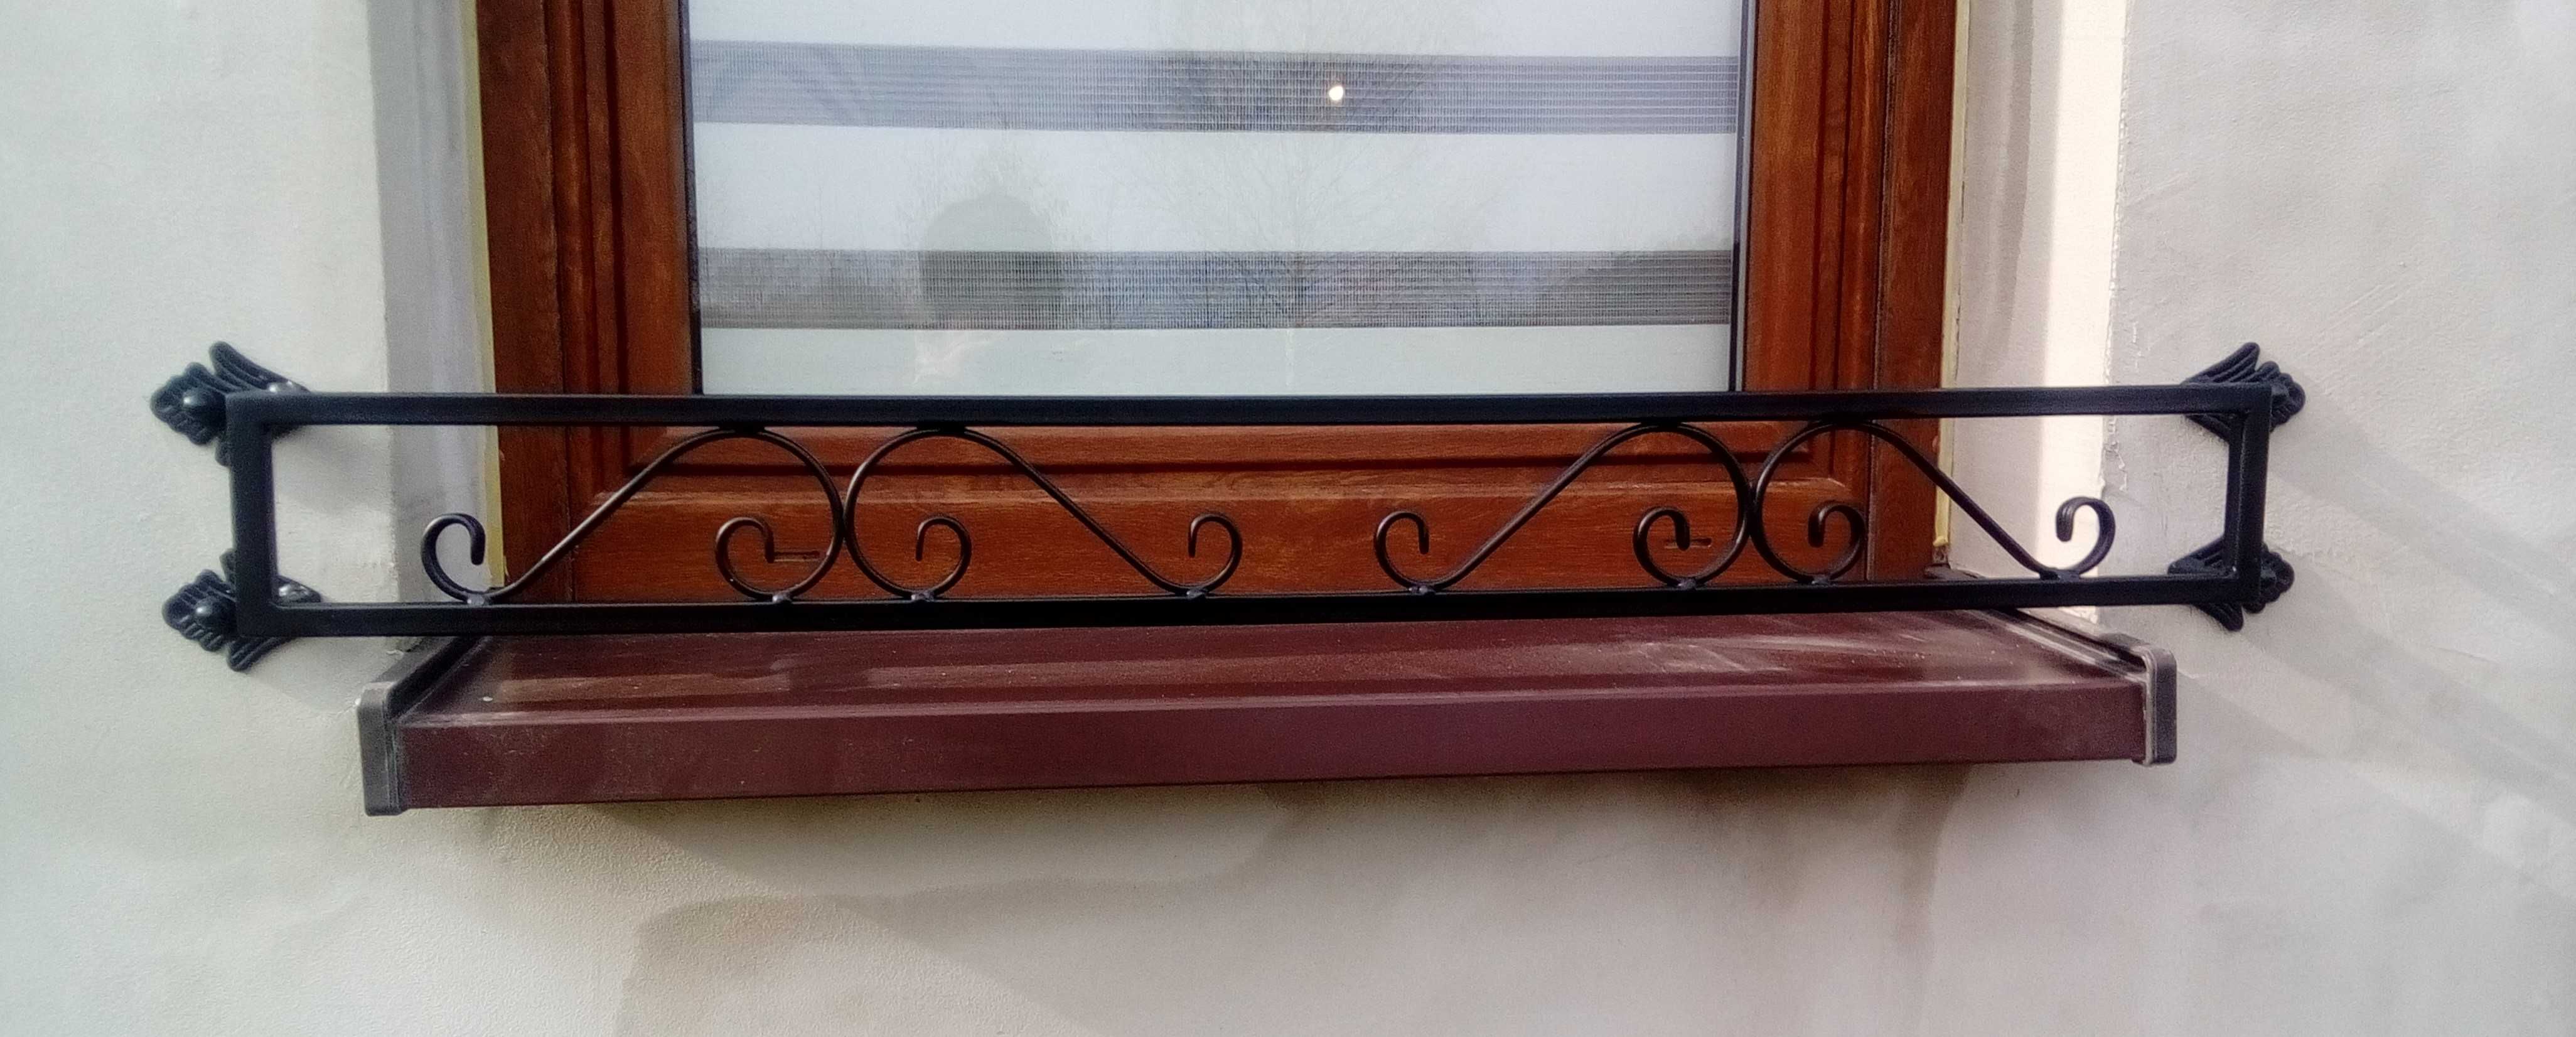 Kwietnik barierka płotek odgroda wspornik skrzynka parapet okno metal